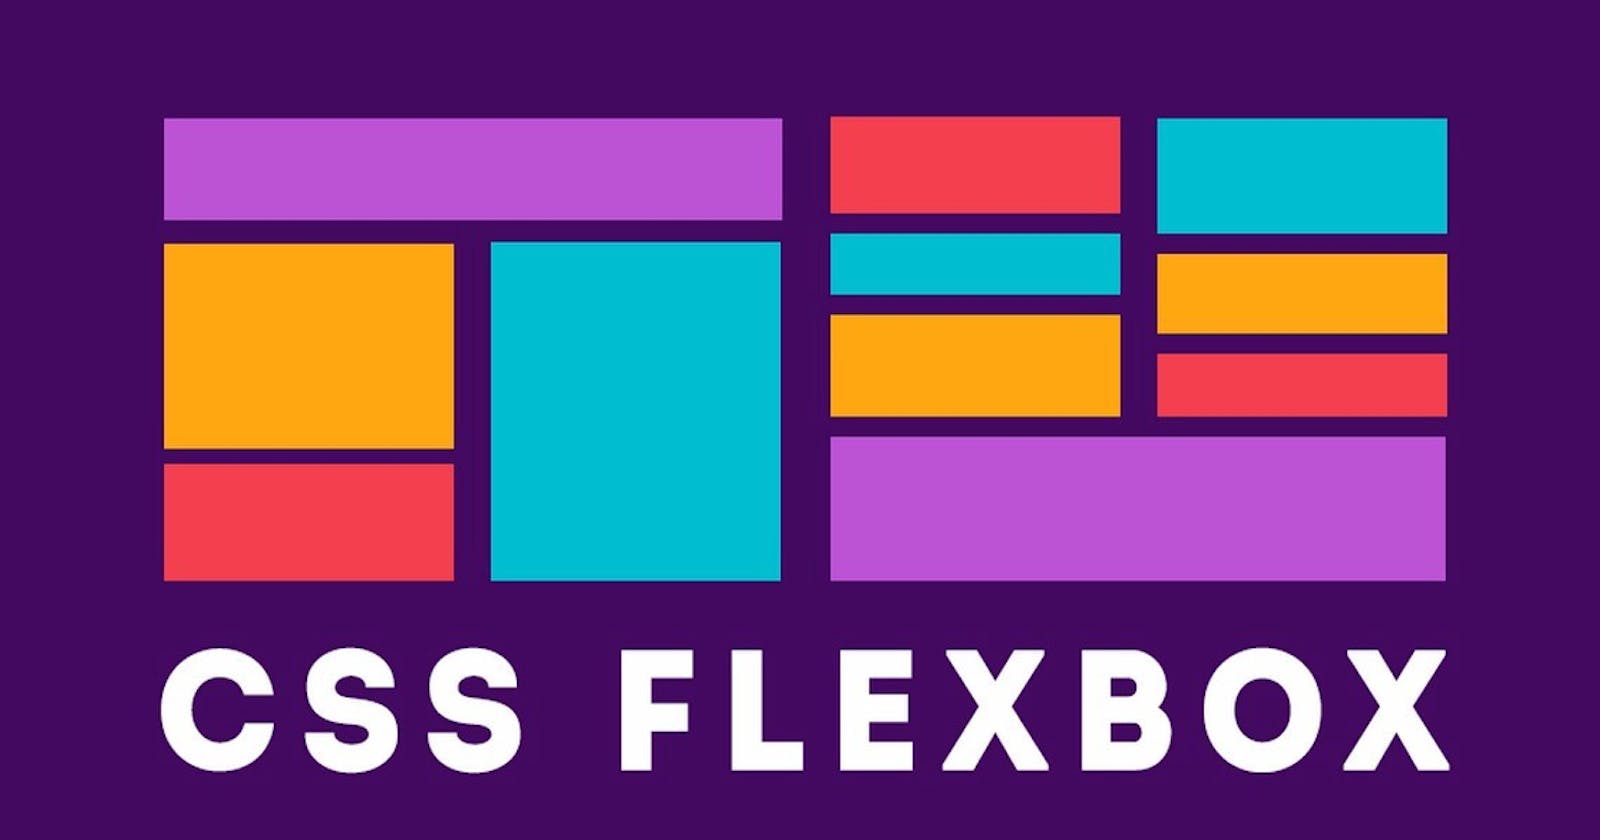 Let’s Explore CSS FlexBox